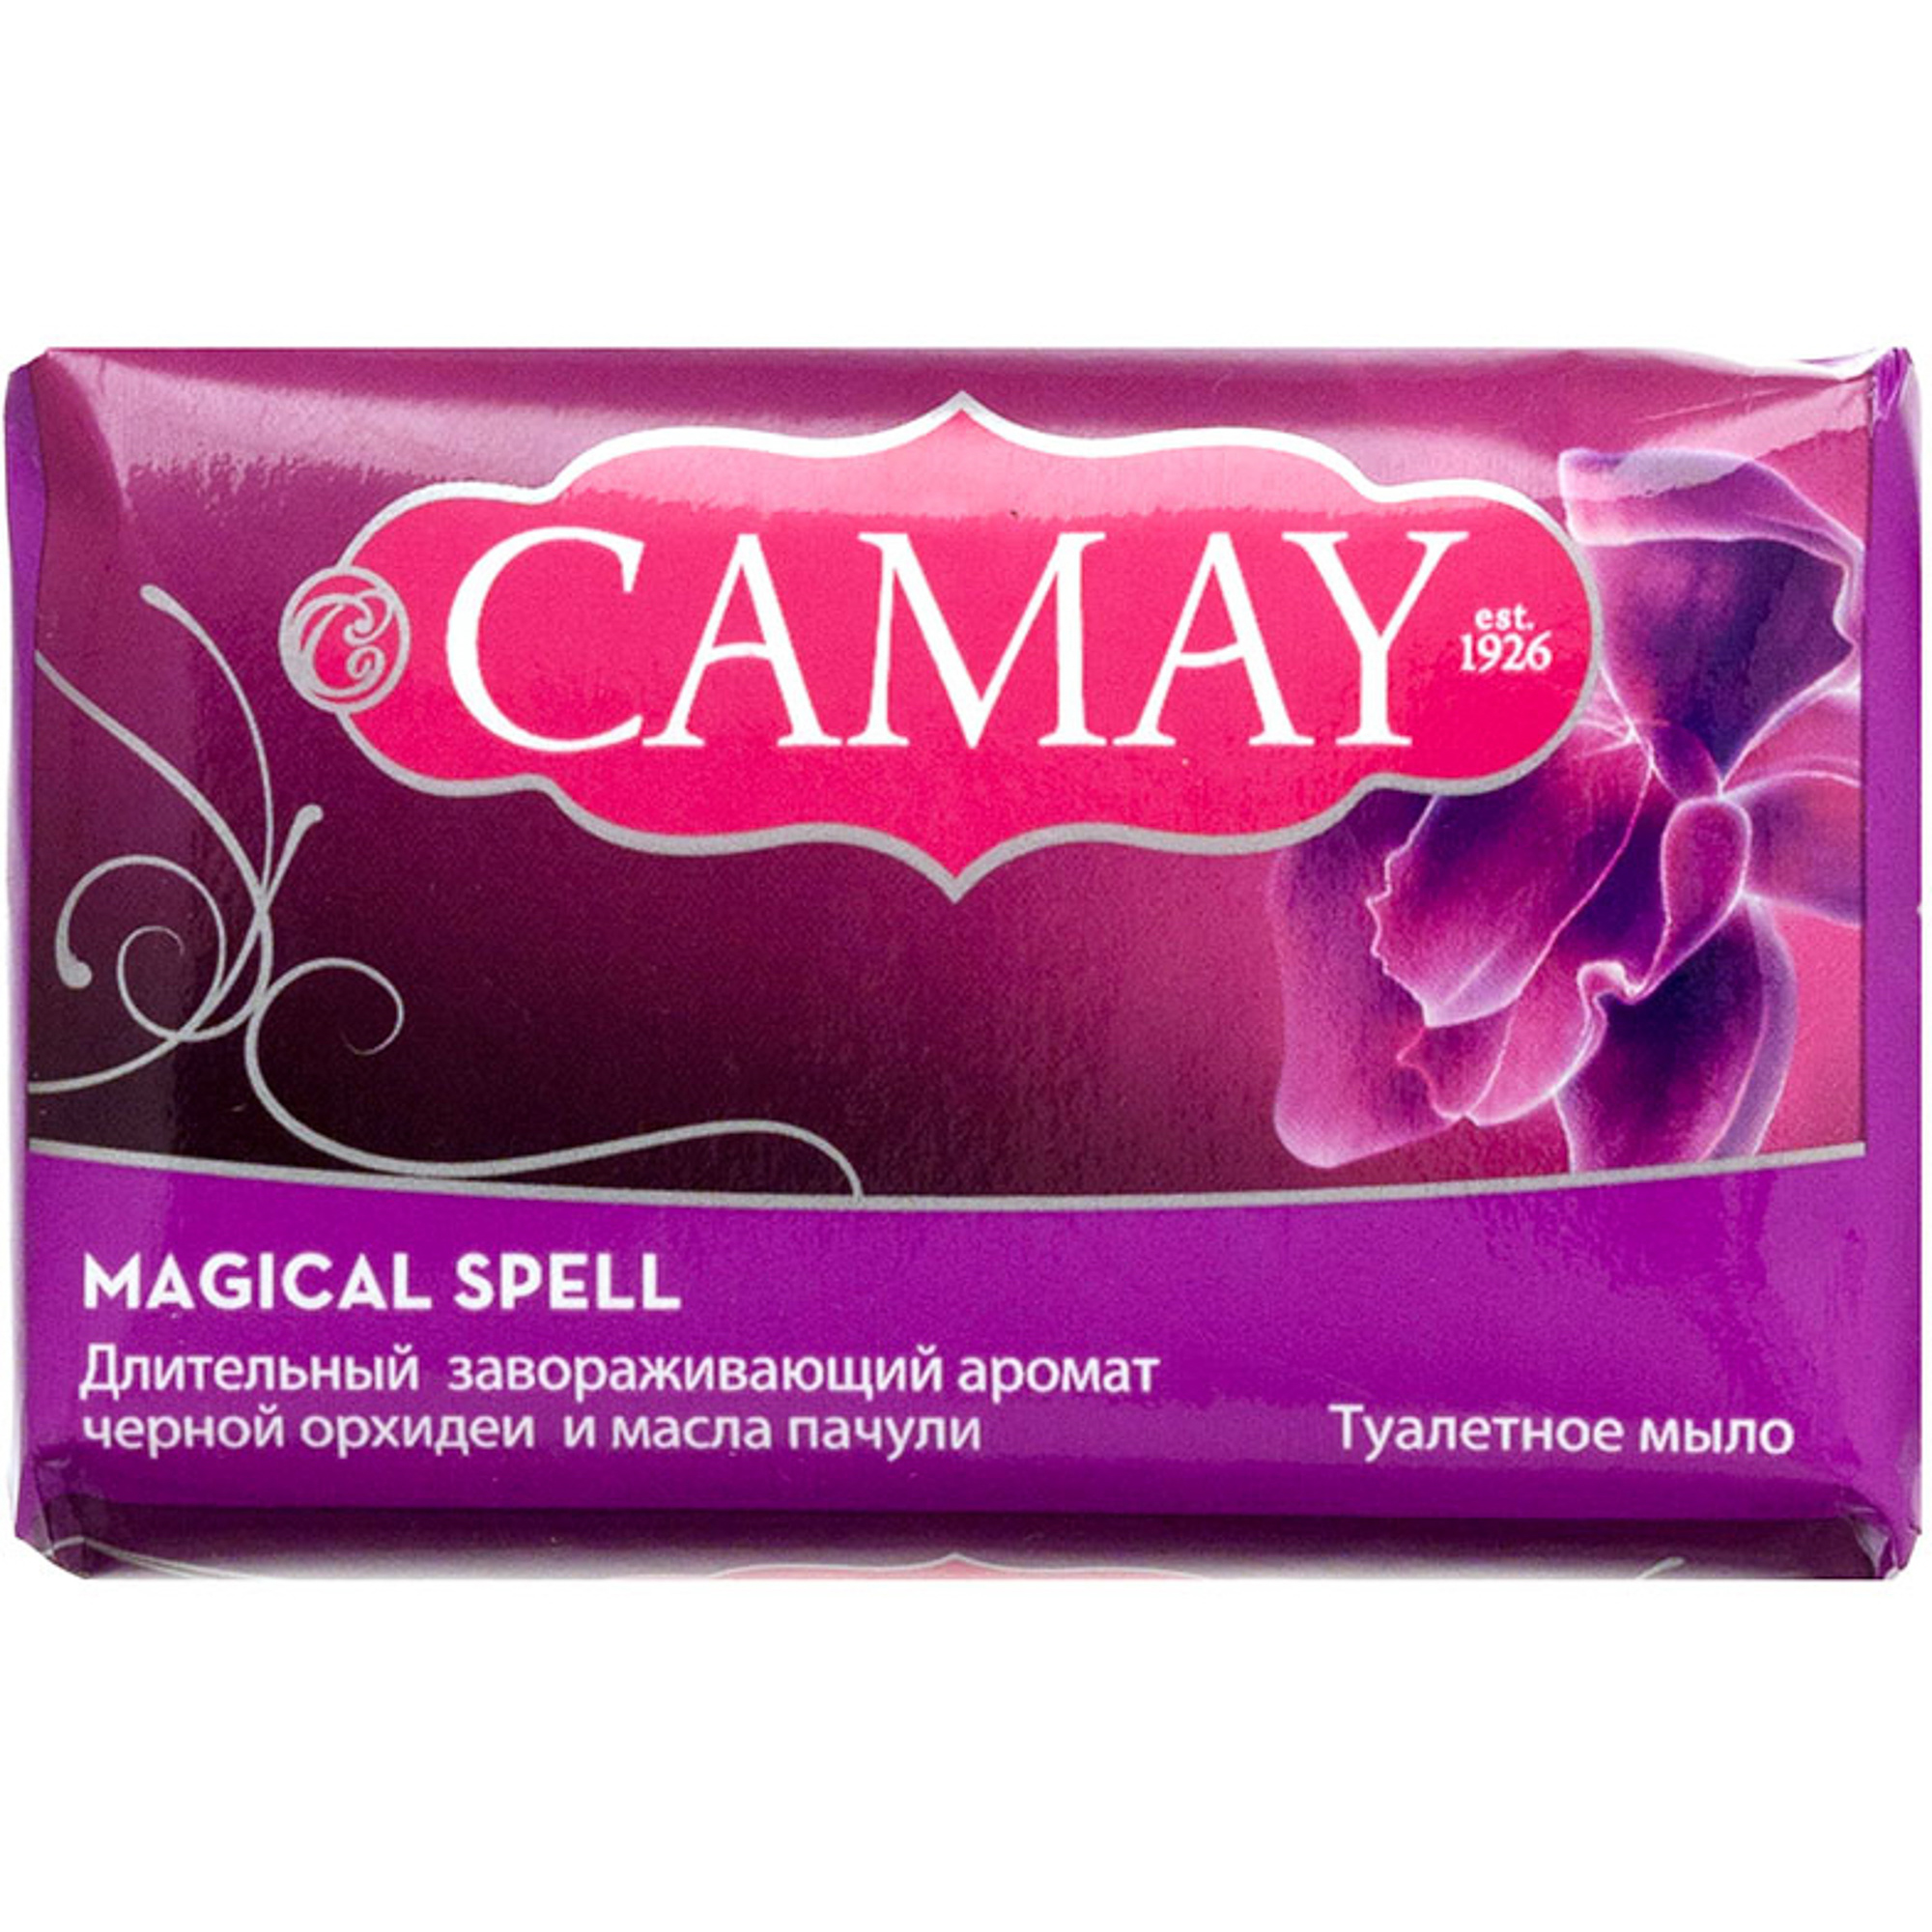 Мыло Camay Магическое заклинание 85 г camay мыло magique магическое заклинание туалетное 3 шт x 85 г